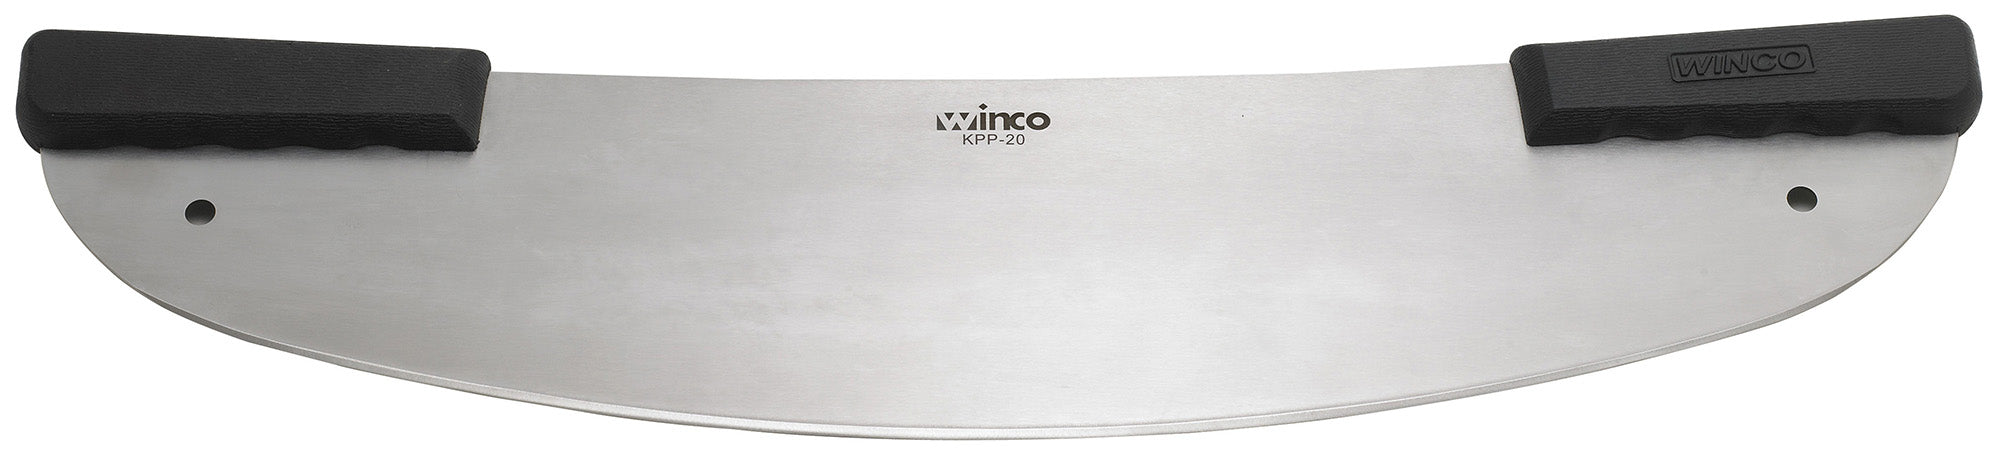 Winco KPP-20